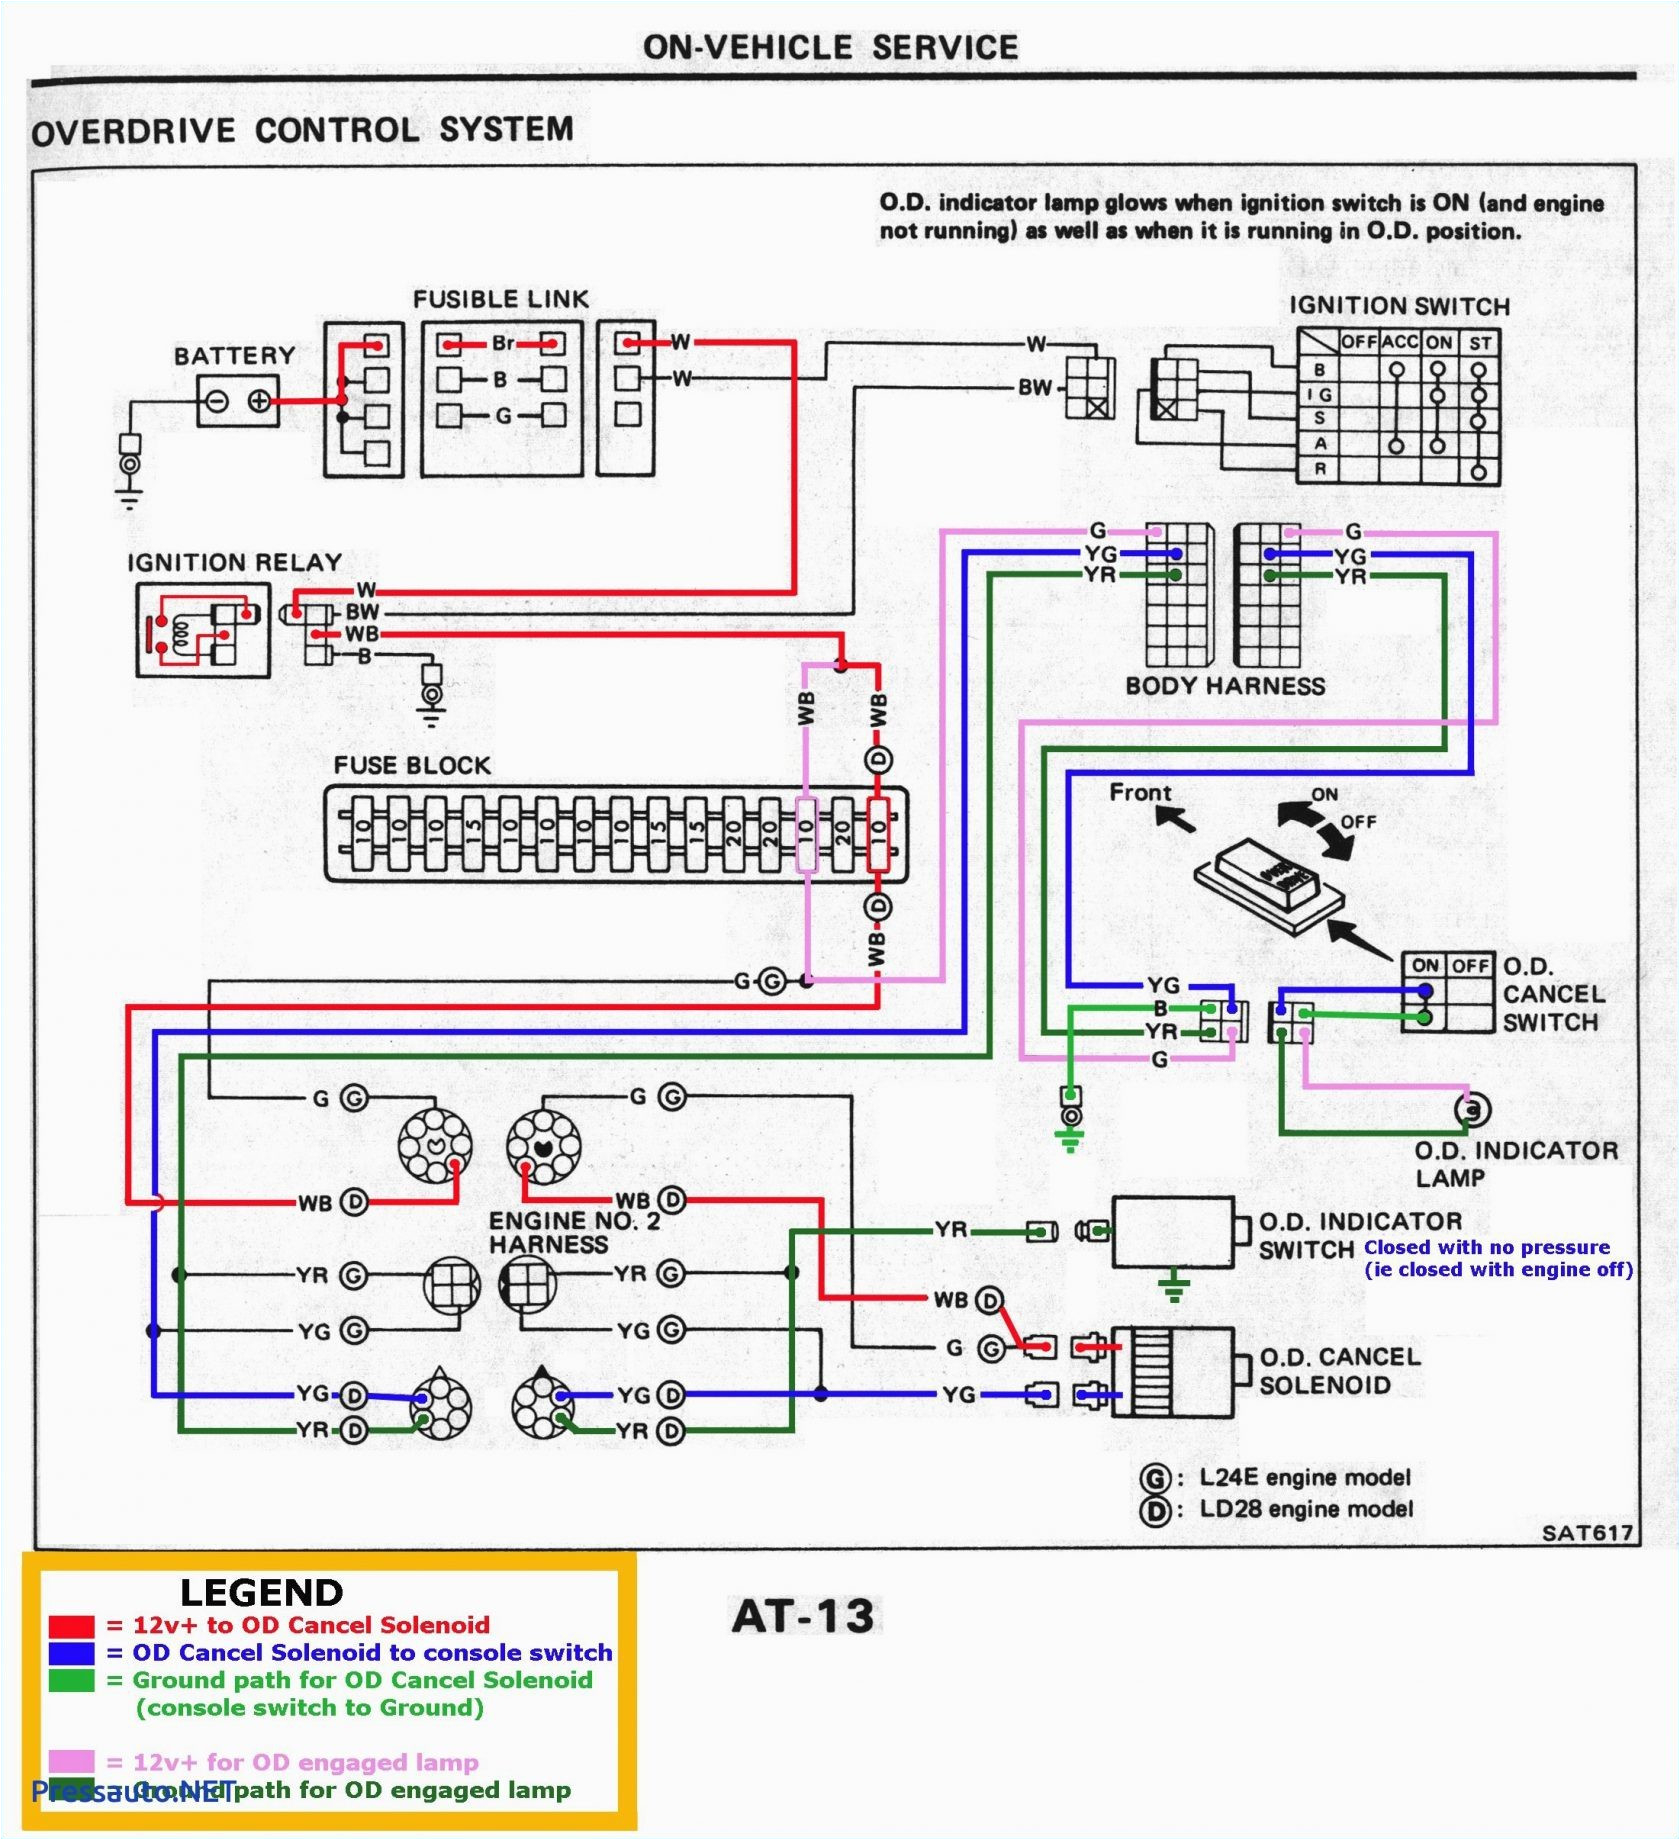 schematic wiring diagram ach 088 wiring diagram user schematic wiring diagram ach 800